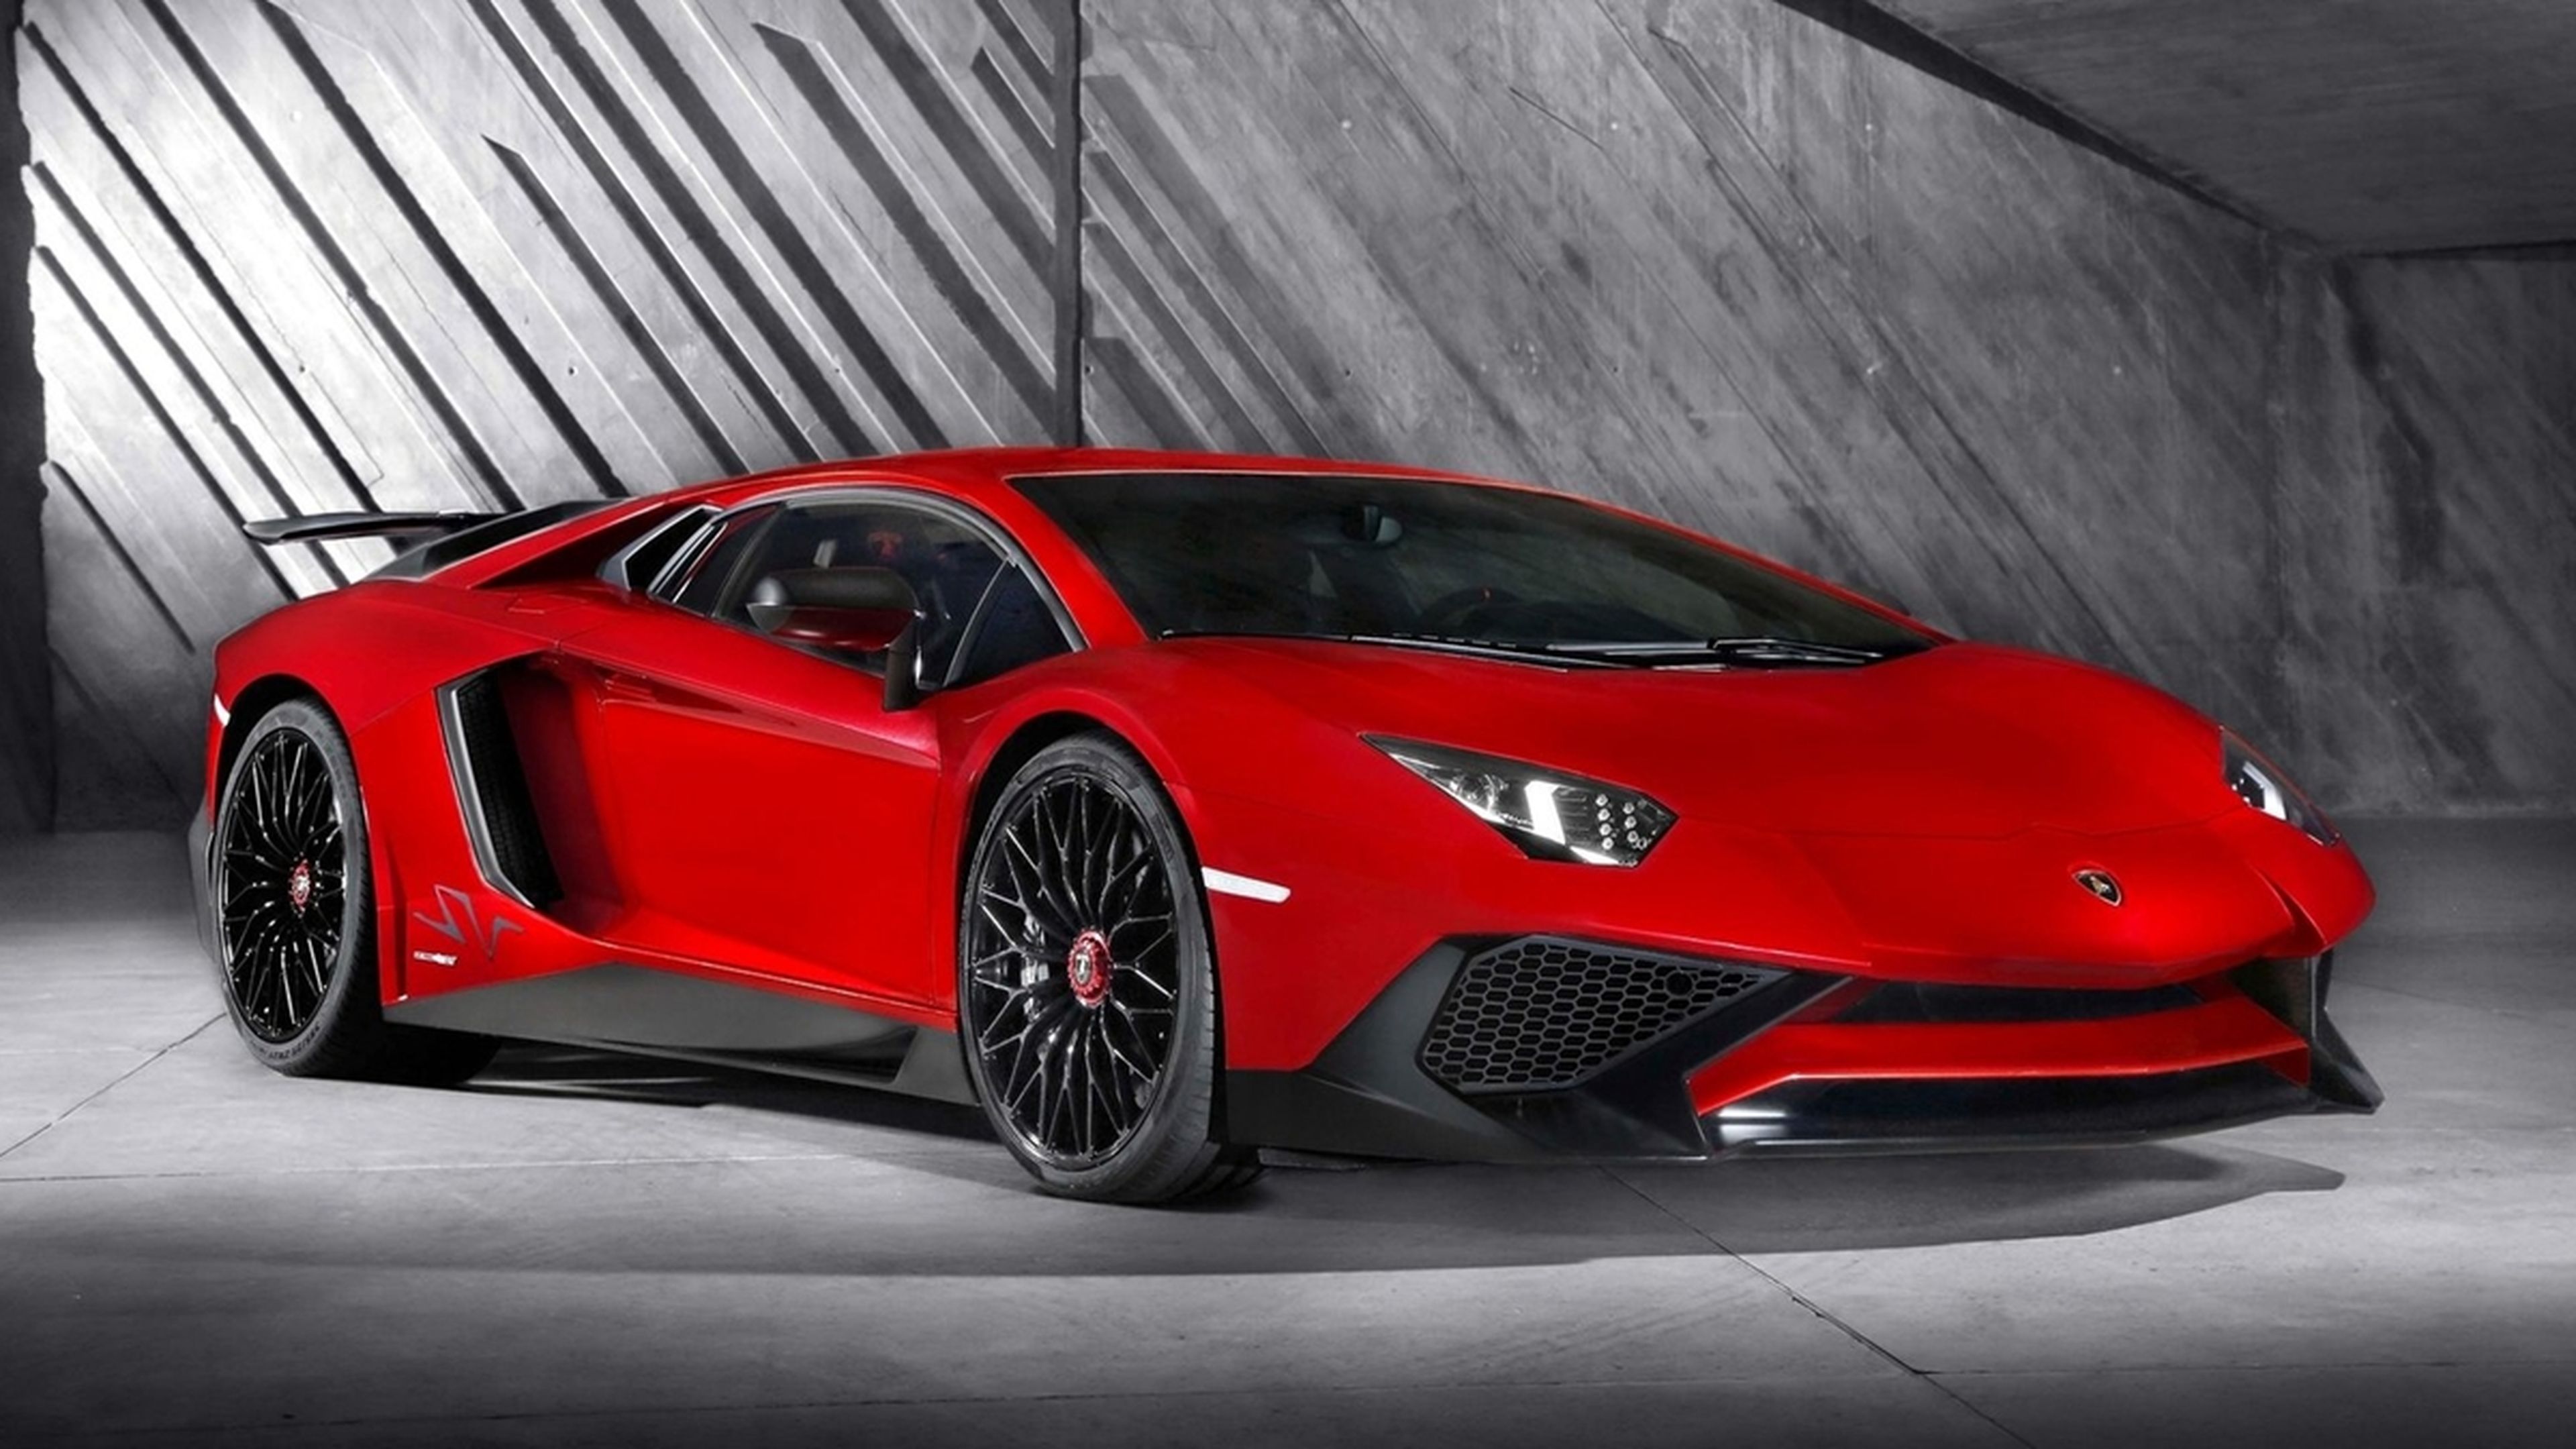 Lamborghini_Aventador_LP_750-4SV_SV_frontal